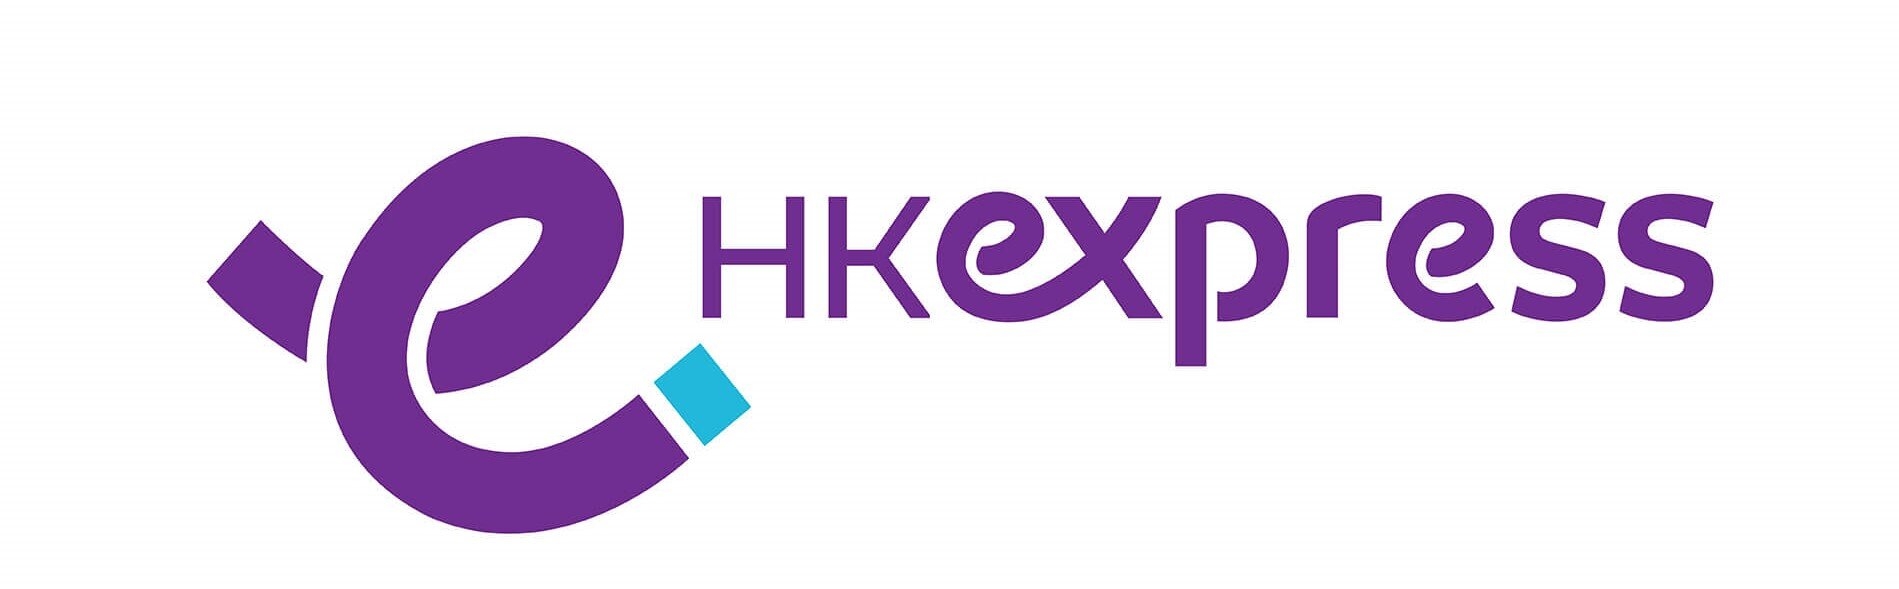 1920x1080_HKE-logo(JPG).jpg